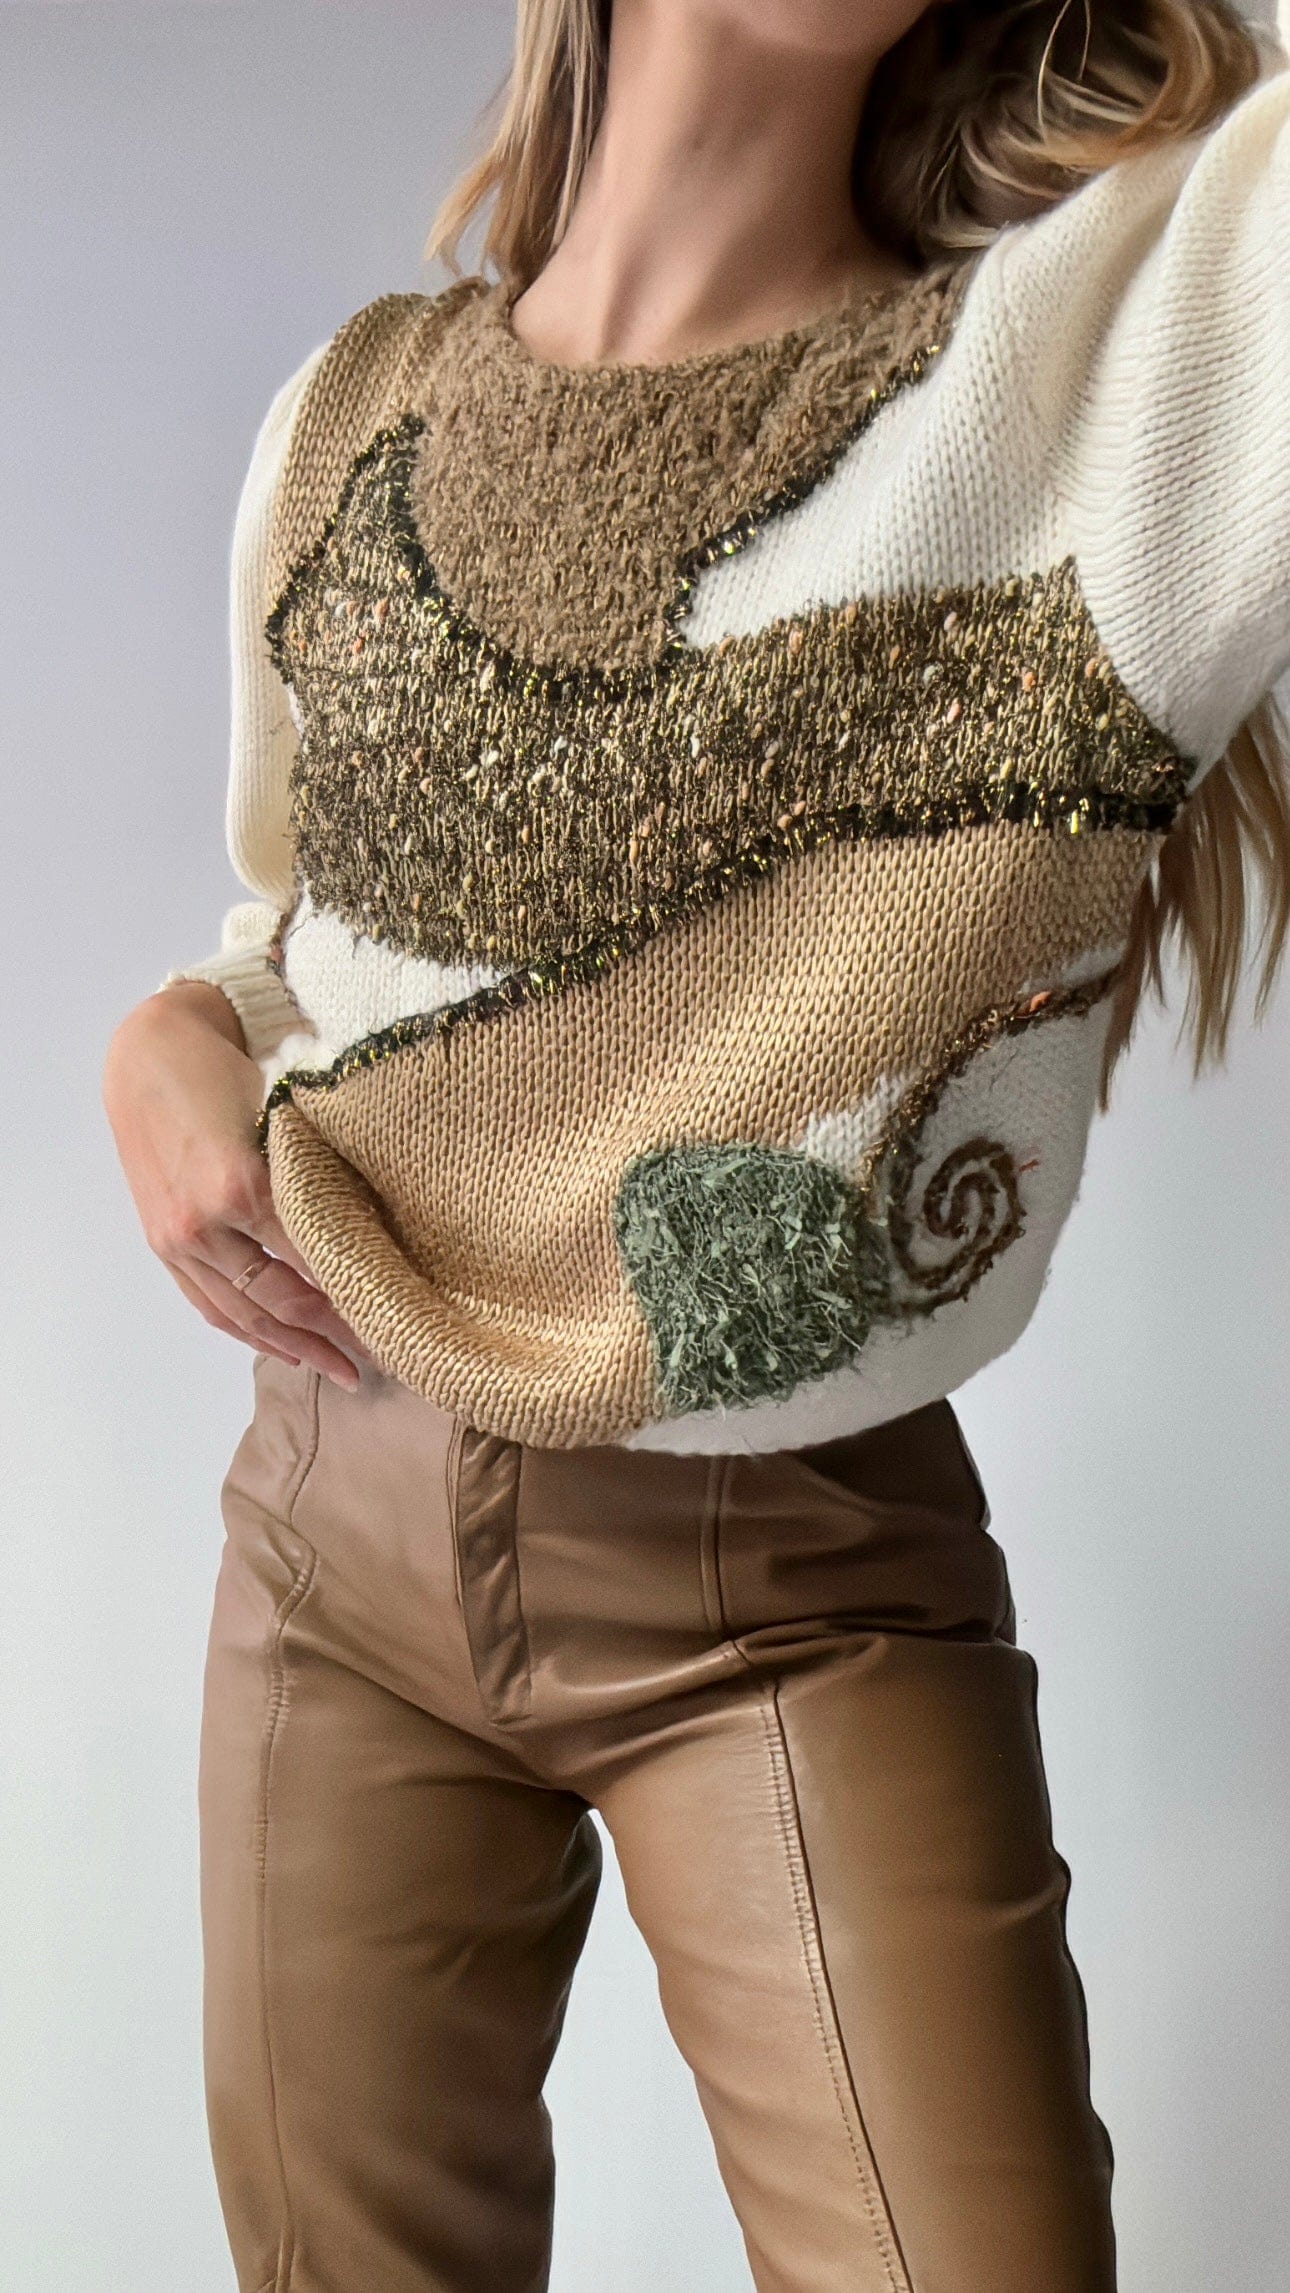 Sistergolden Golden Concept Vintage Knit